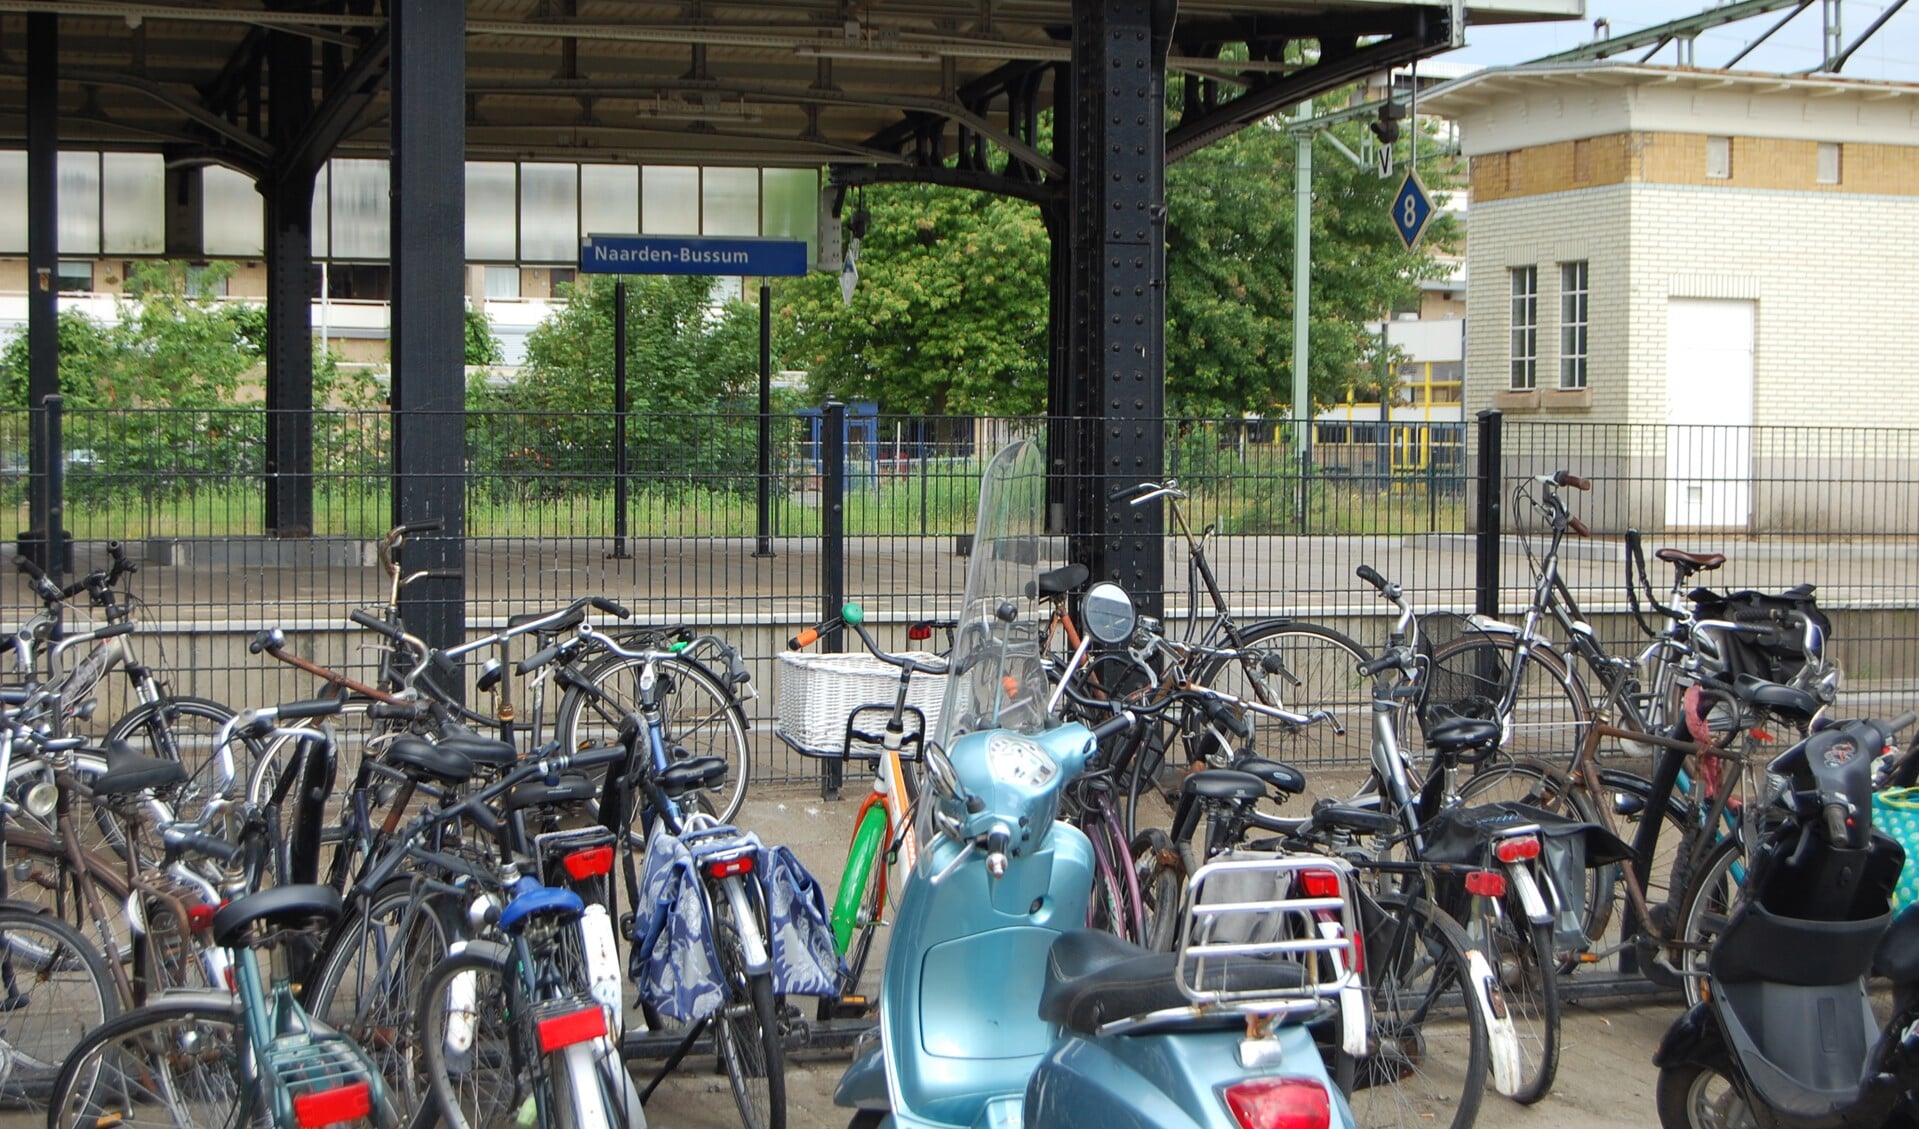 Vooral bij de stations worden veel fietsen gestolen. Graveren helpt om dieven te pakken te krijgen.